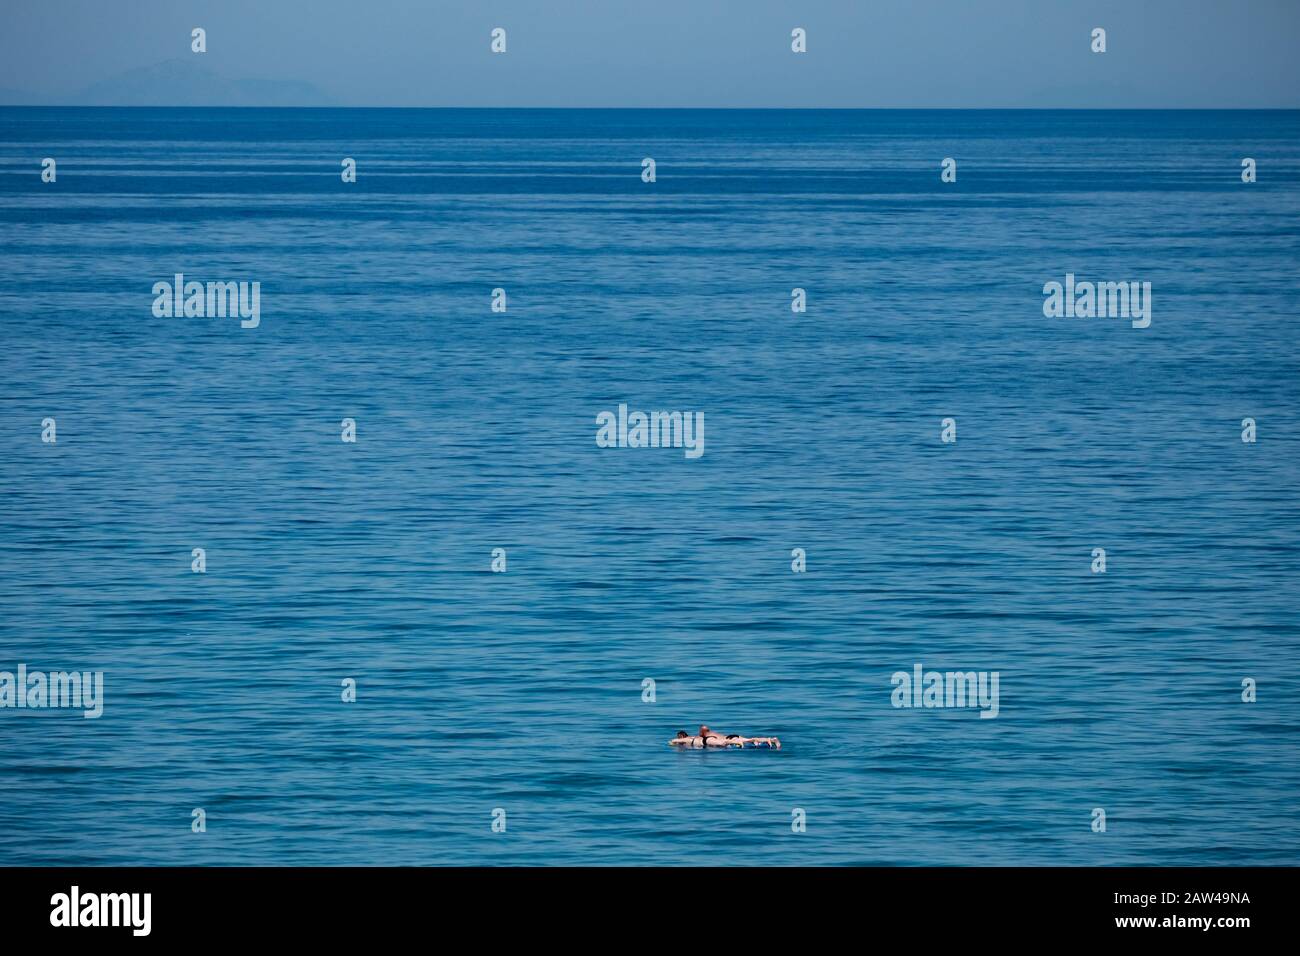 Une grande vue de la mer et de l'horizon sans terre visible avec un couple sur les inflatables flottant dans une vaste étendue d'eau. Banque D'Images